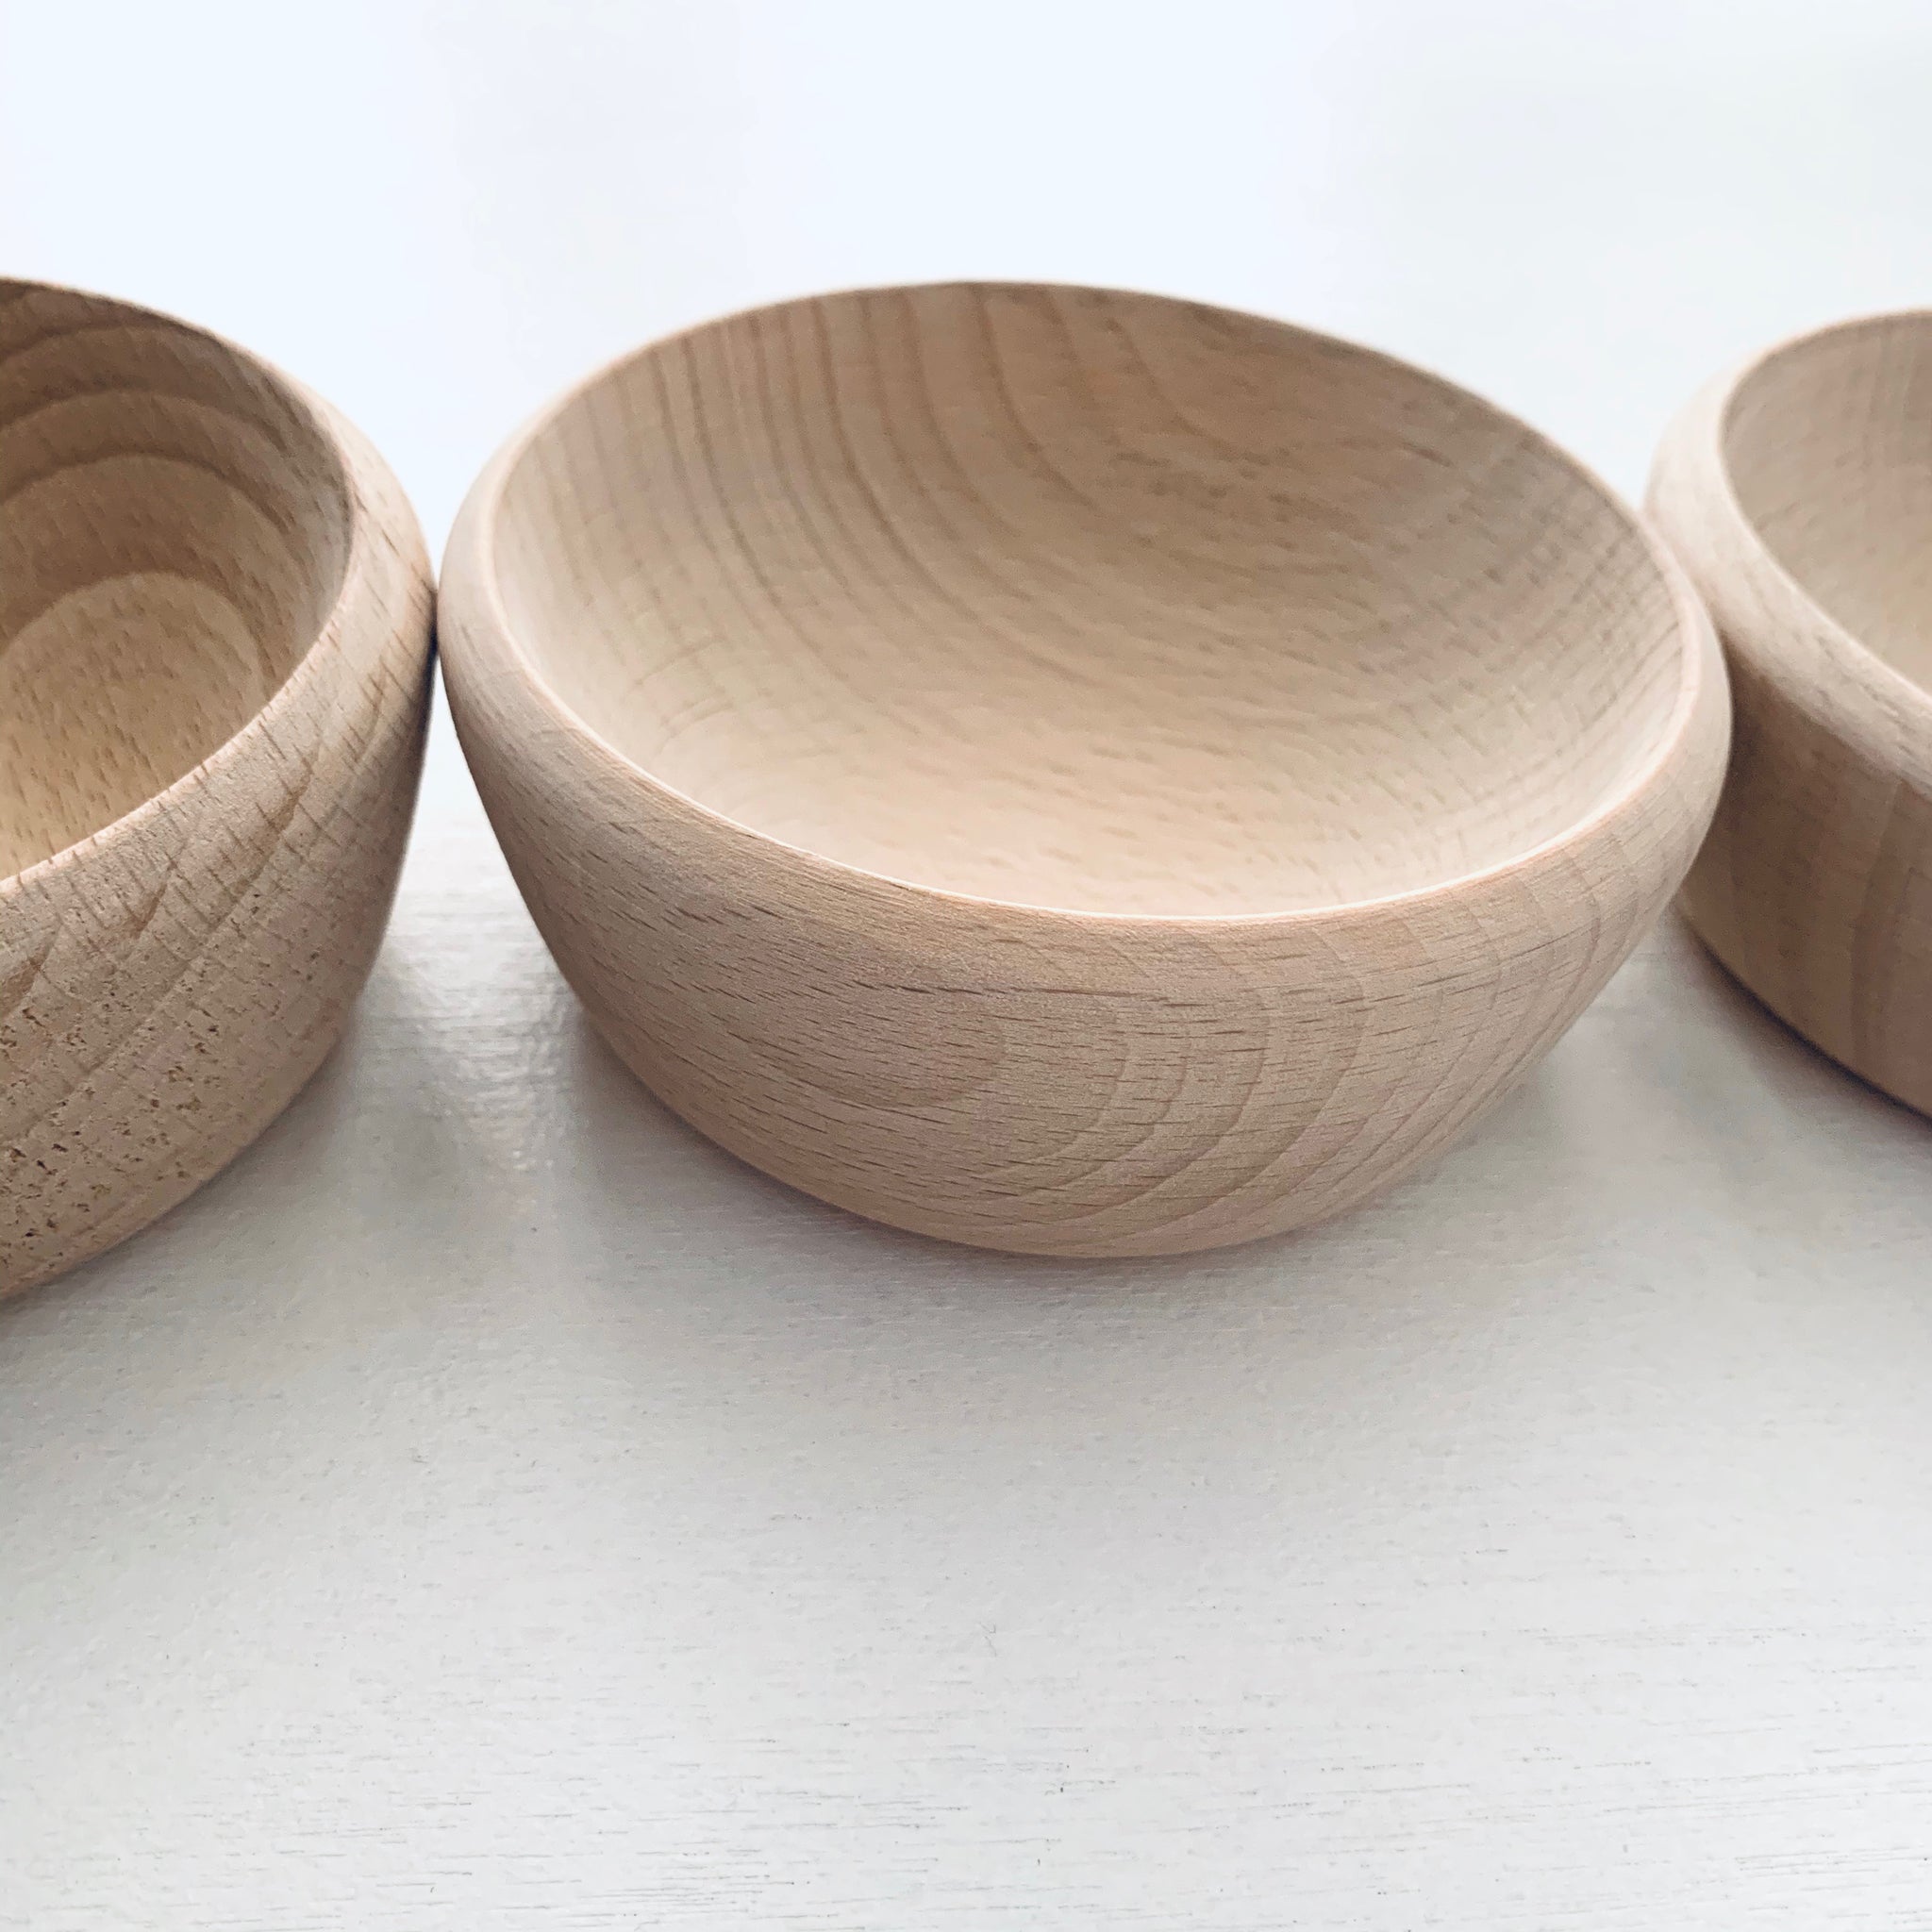 10cm wooden bowl